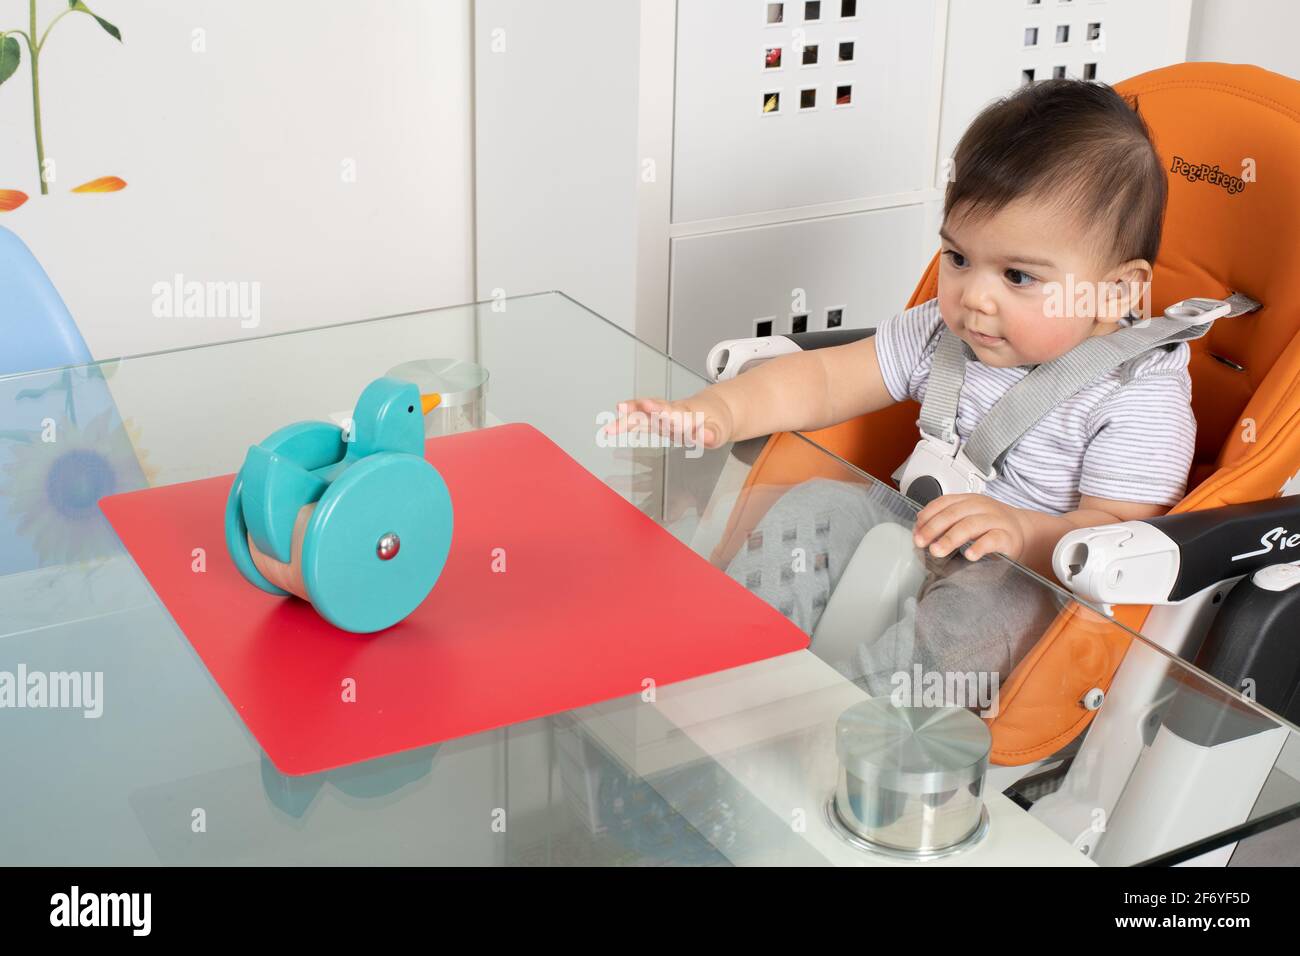 niño de 8 meses sentado en silla alta Tabla Piaget secuencia de permanencia del objeto #1 ver juguete en la mesa Foto de stock